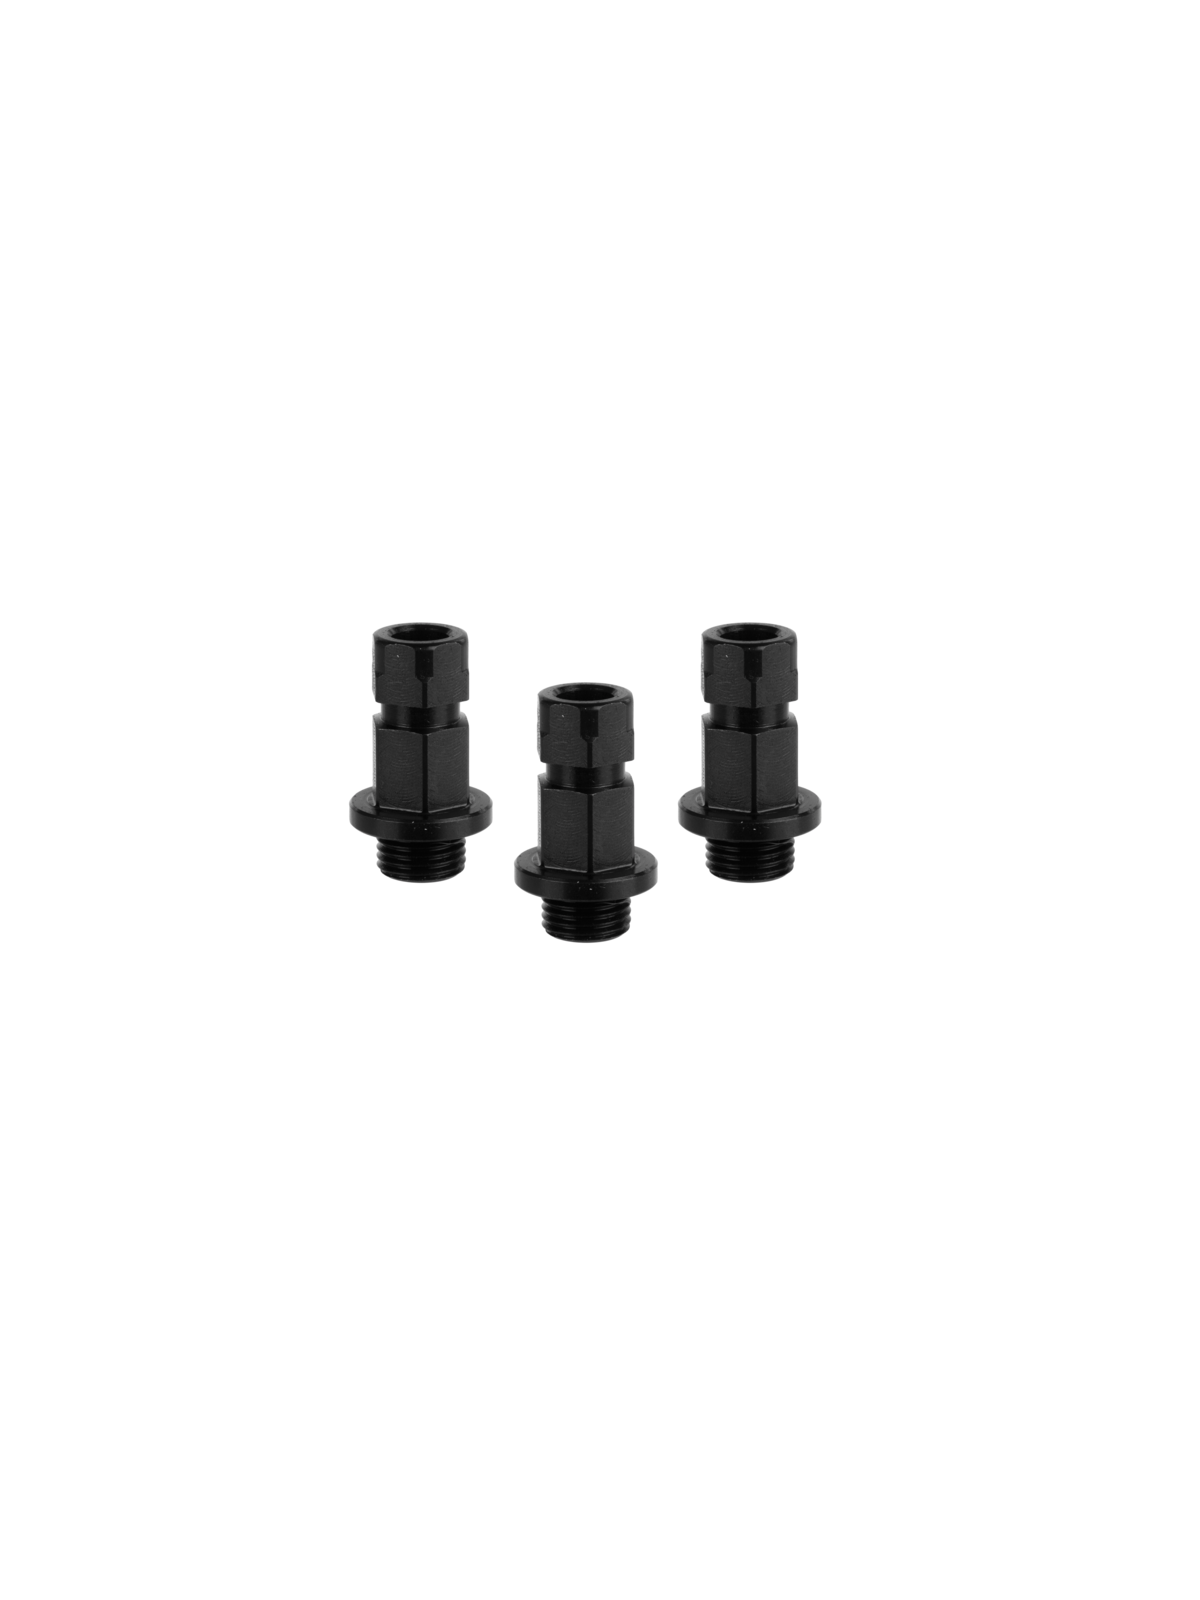 MXqs “ONE Click” adapter voor alle types Bi-metaal en Multi-purpose gatzagen 14mm tot 30mm (3 stuks) Mandrex | JVL-Europe